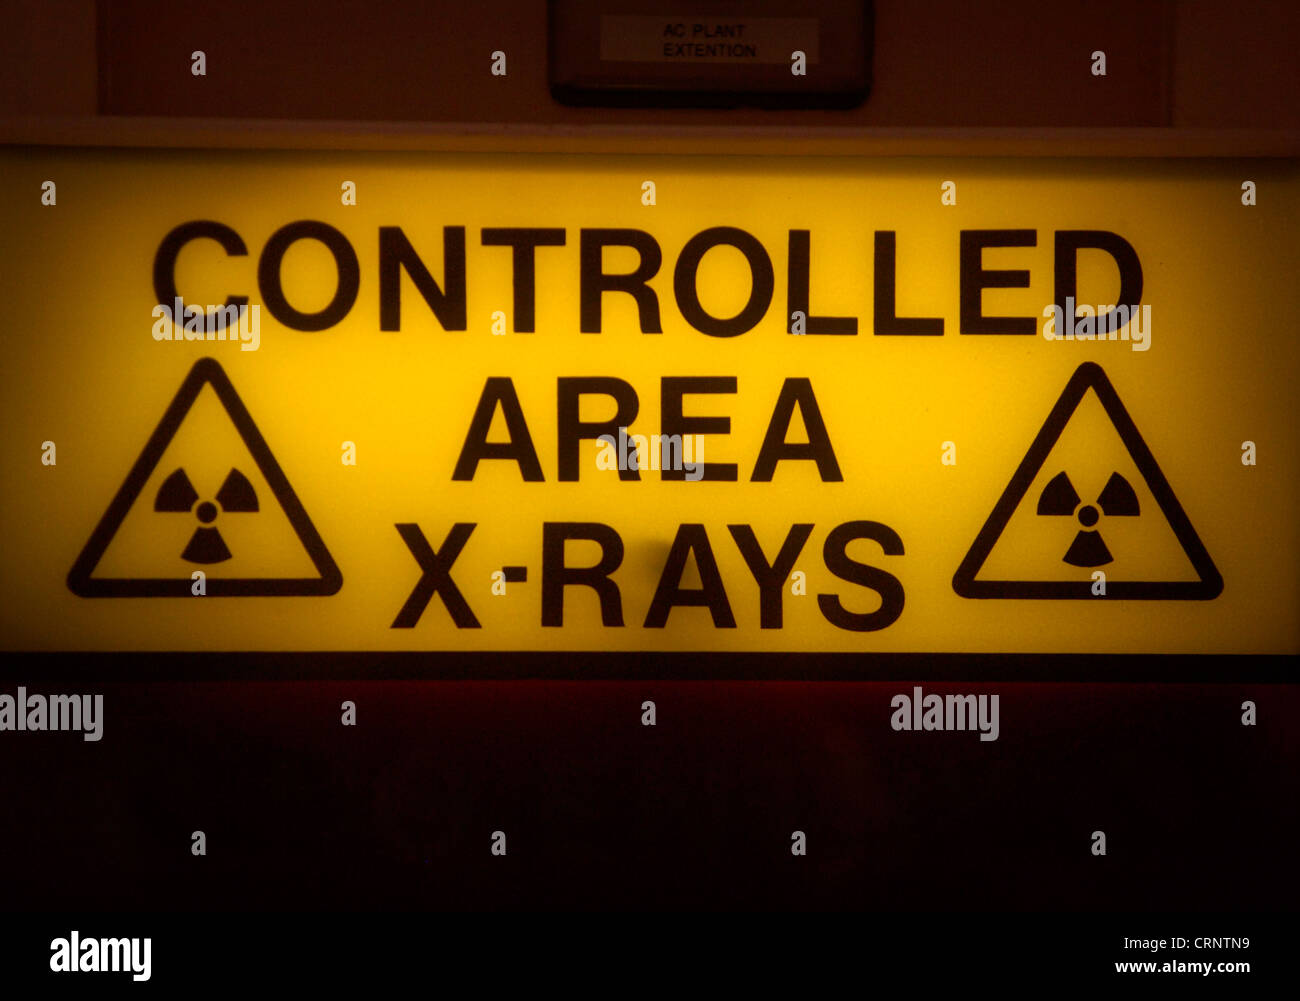 X-Ray kontrollierten Bereich Zeichen Stockfoto